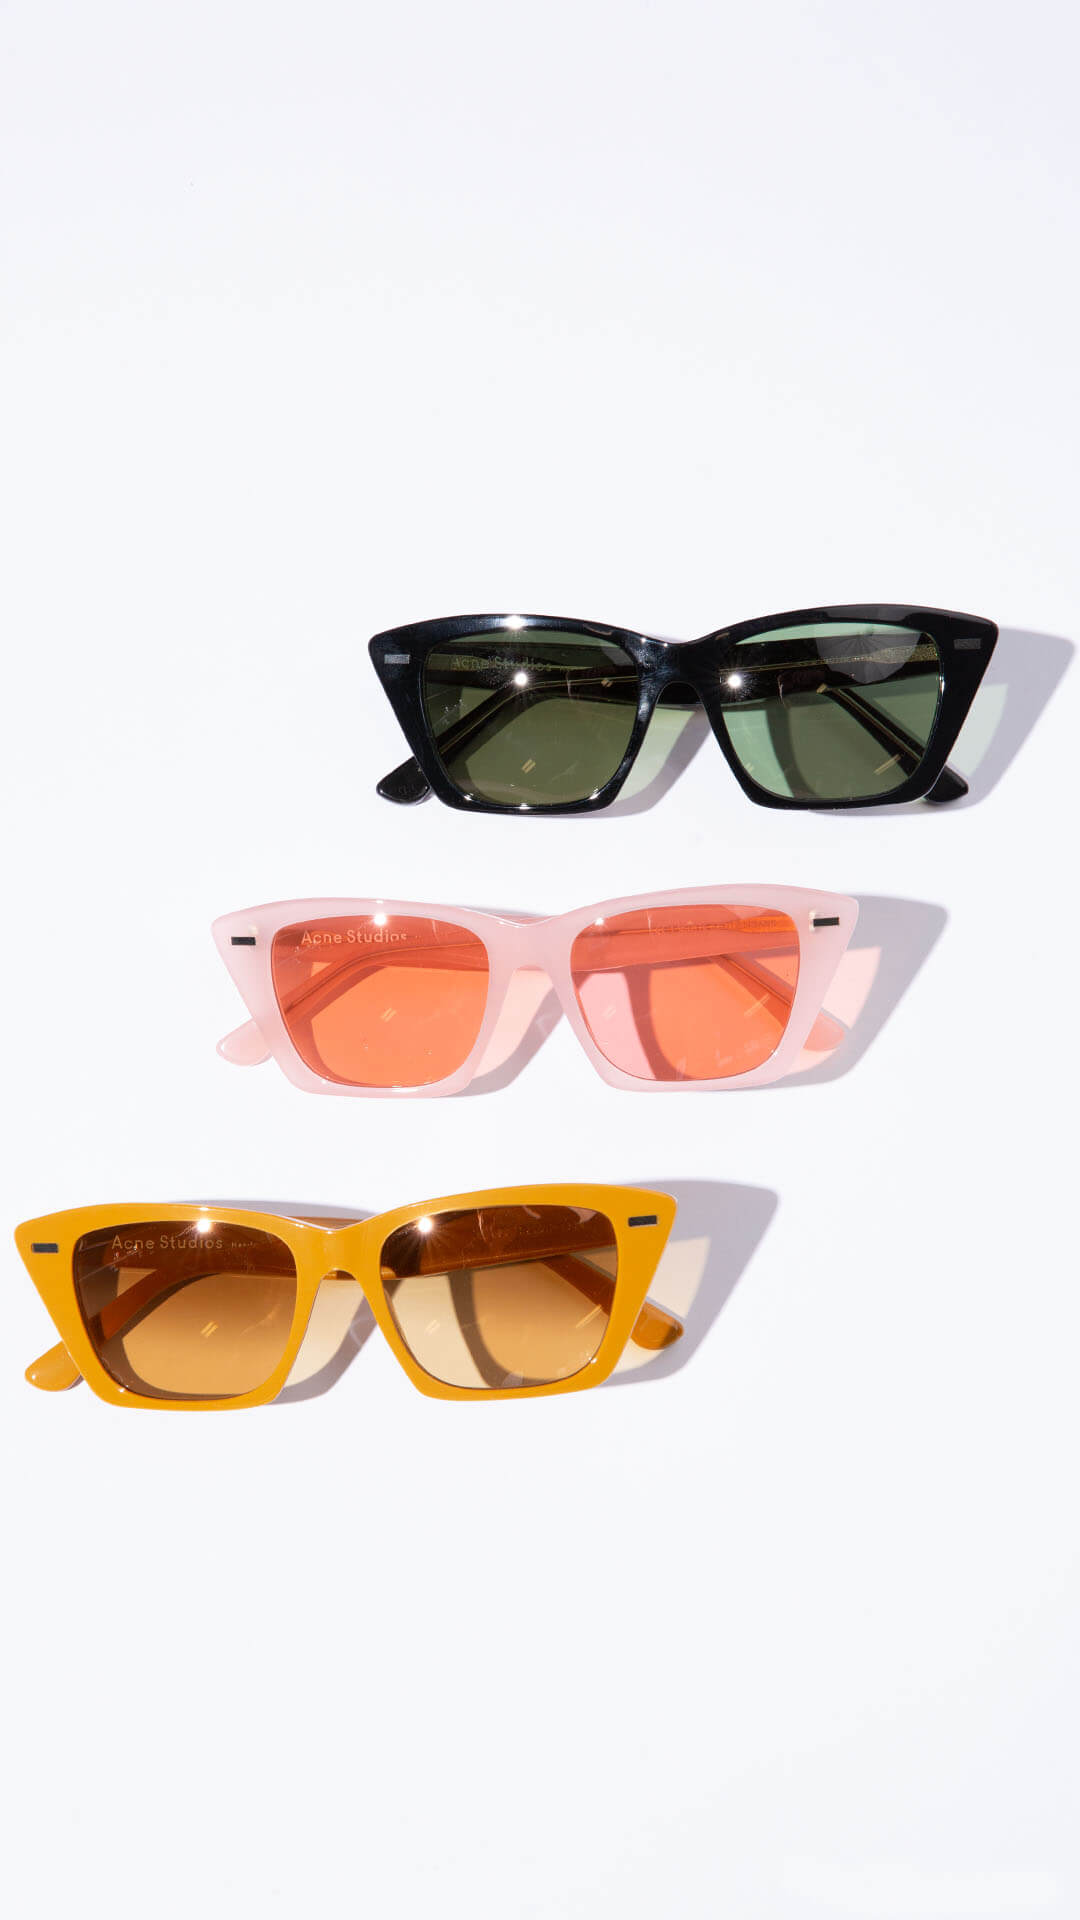 Acne Studios sunglasses